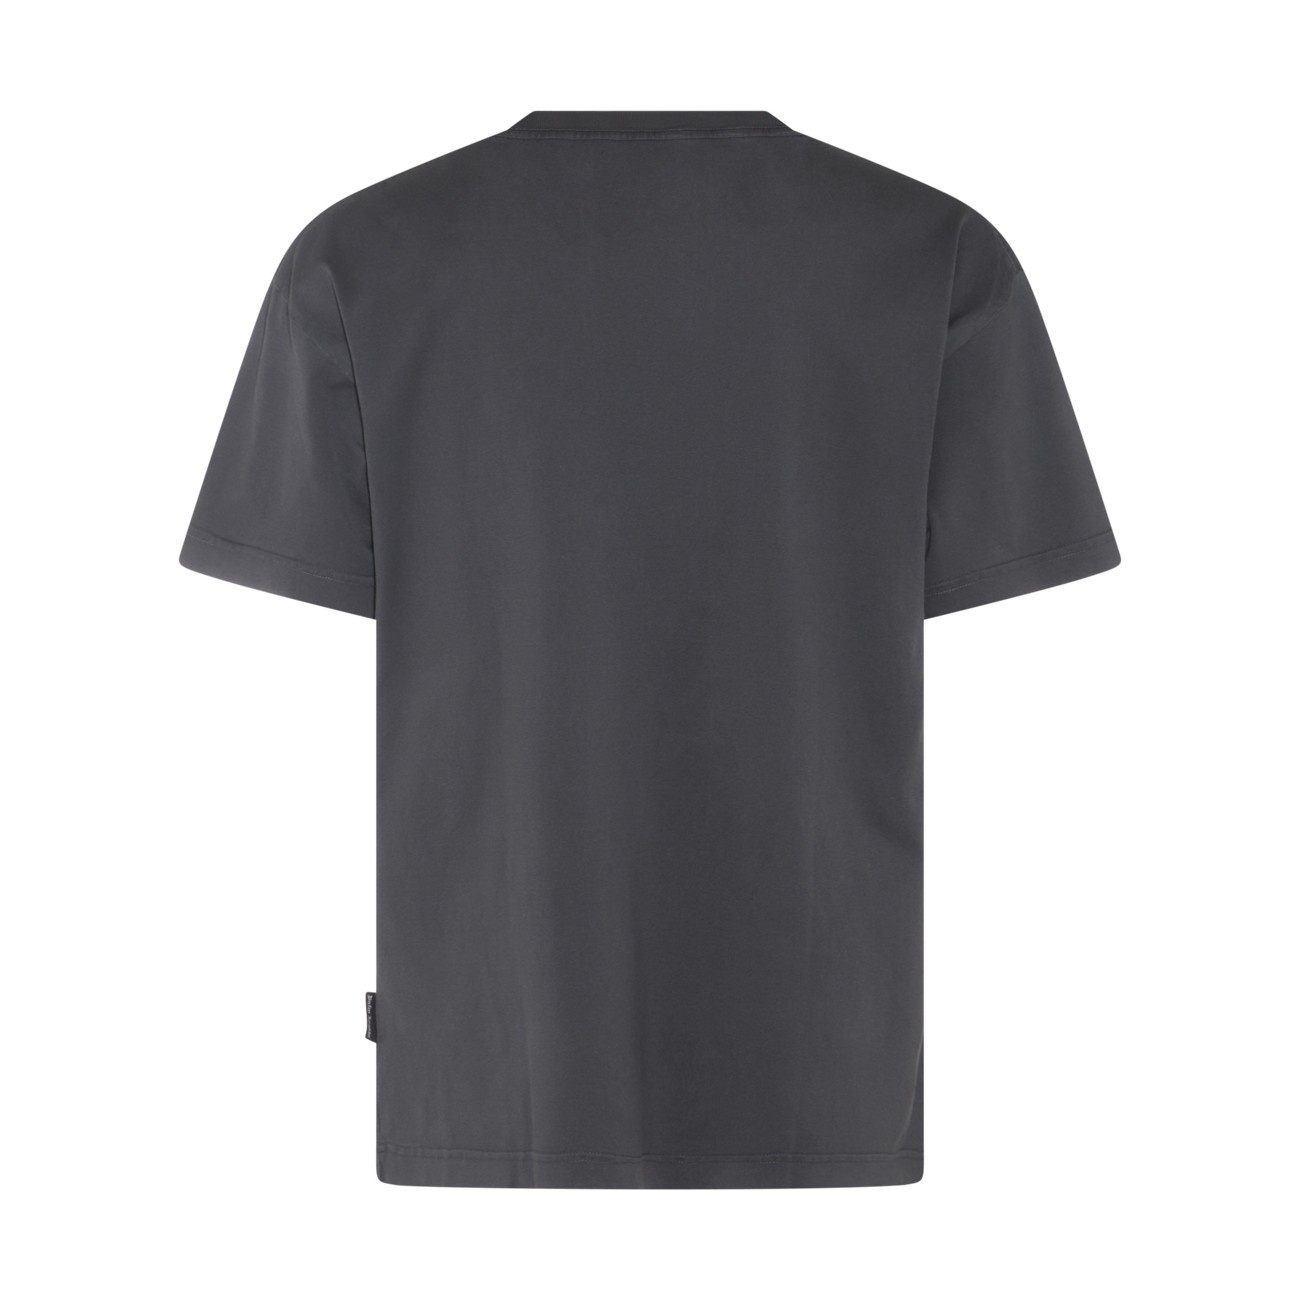 dark grey and white cotton t-shirt - 2